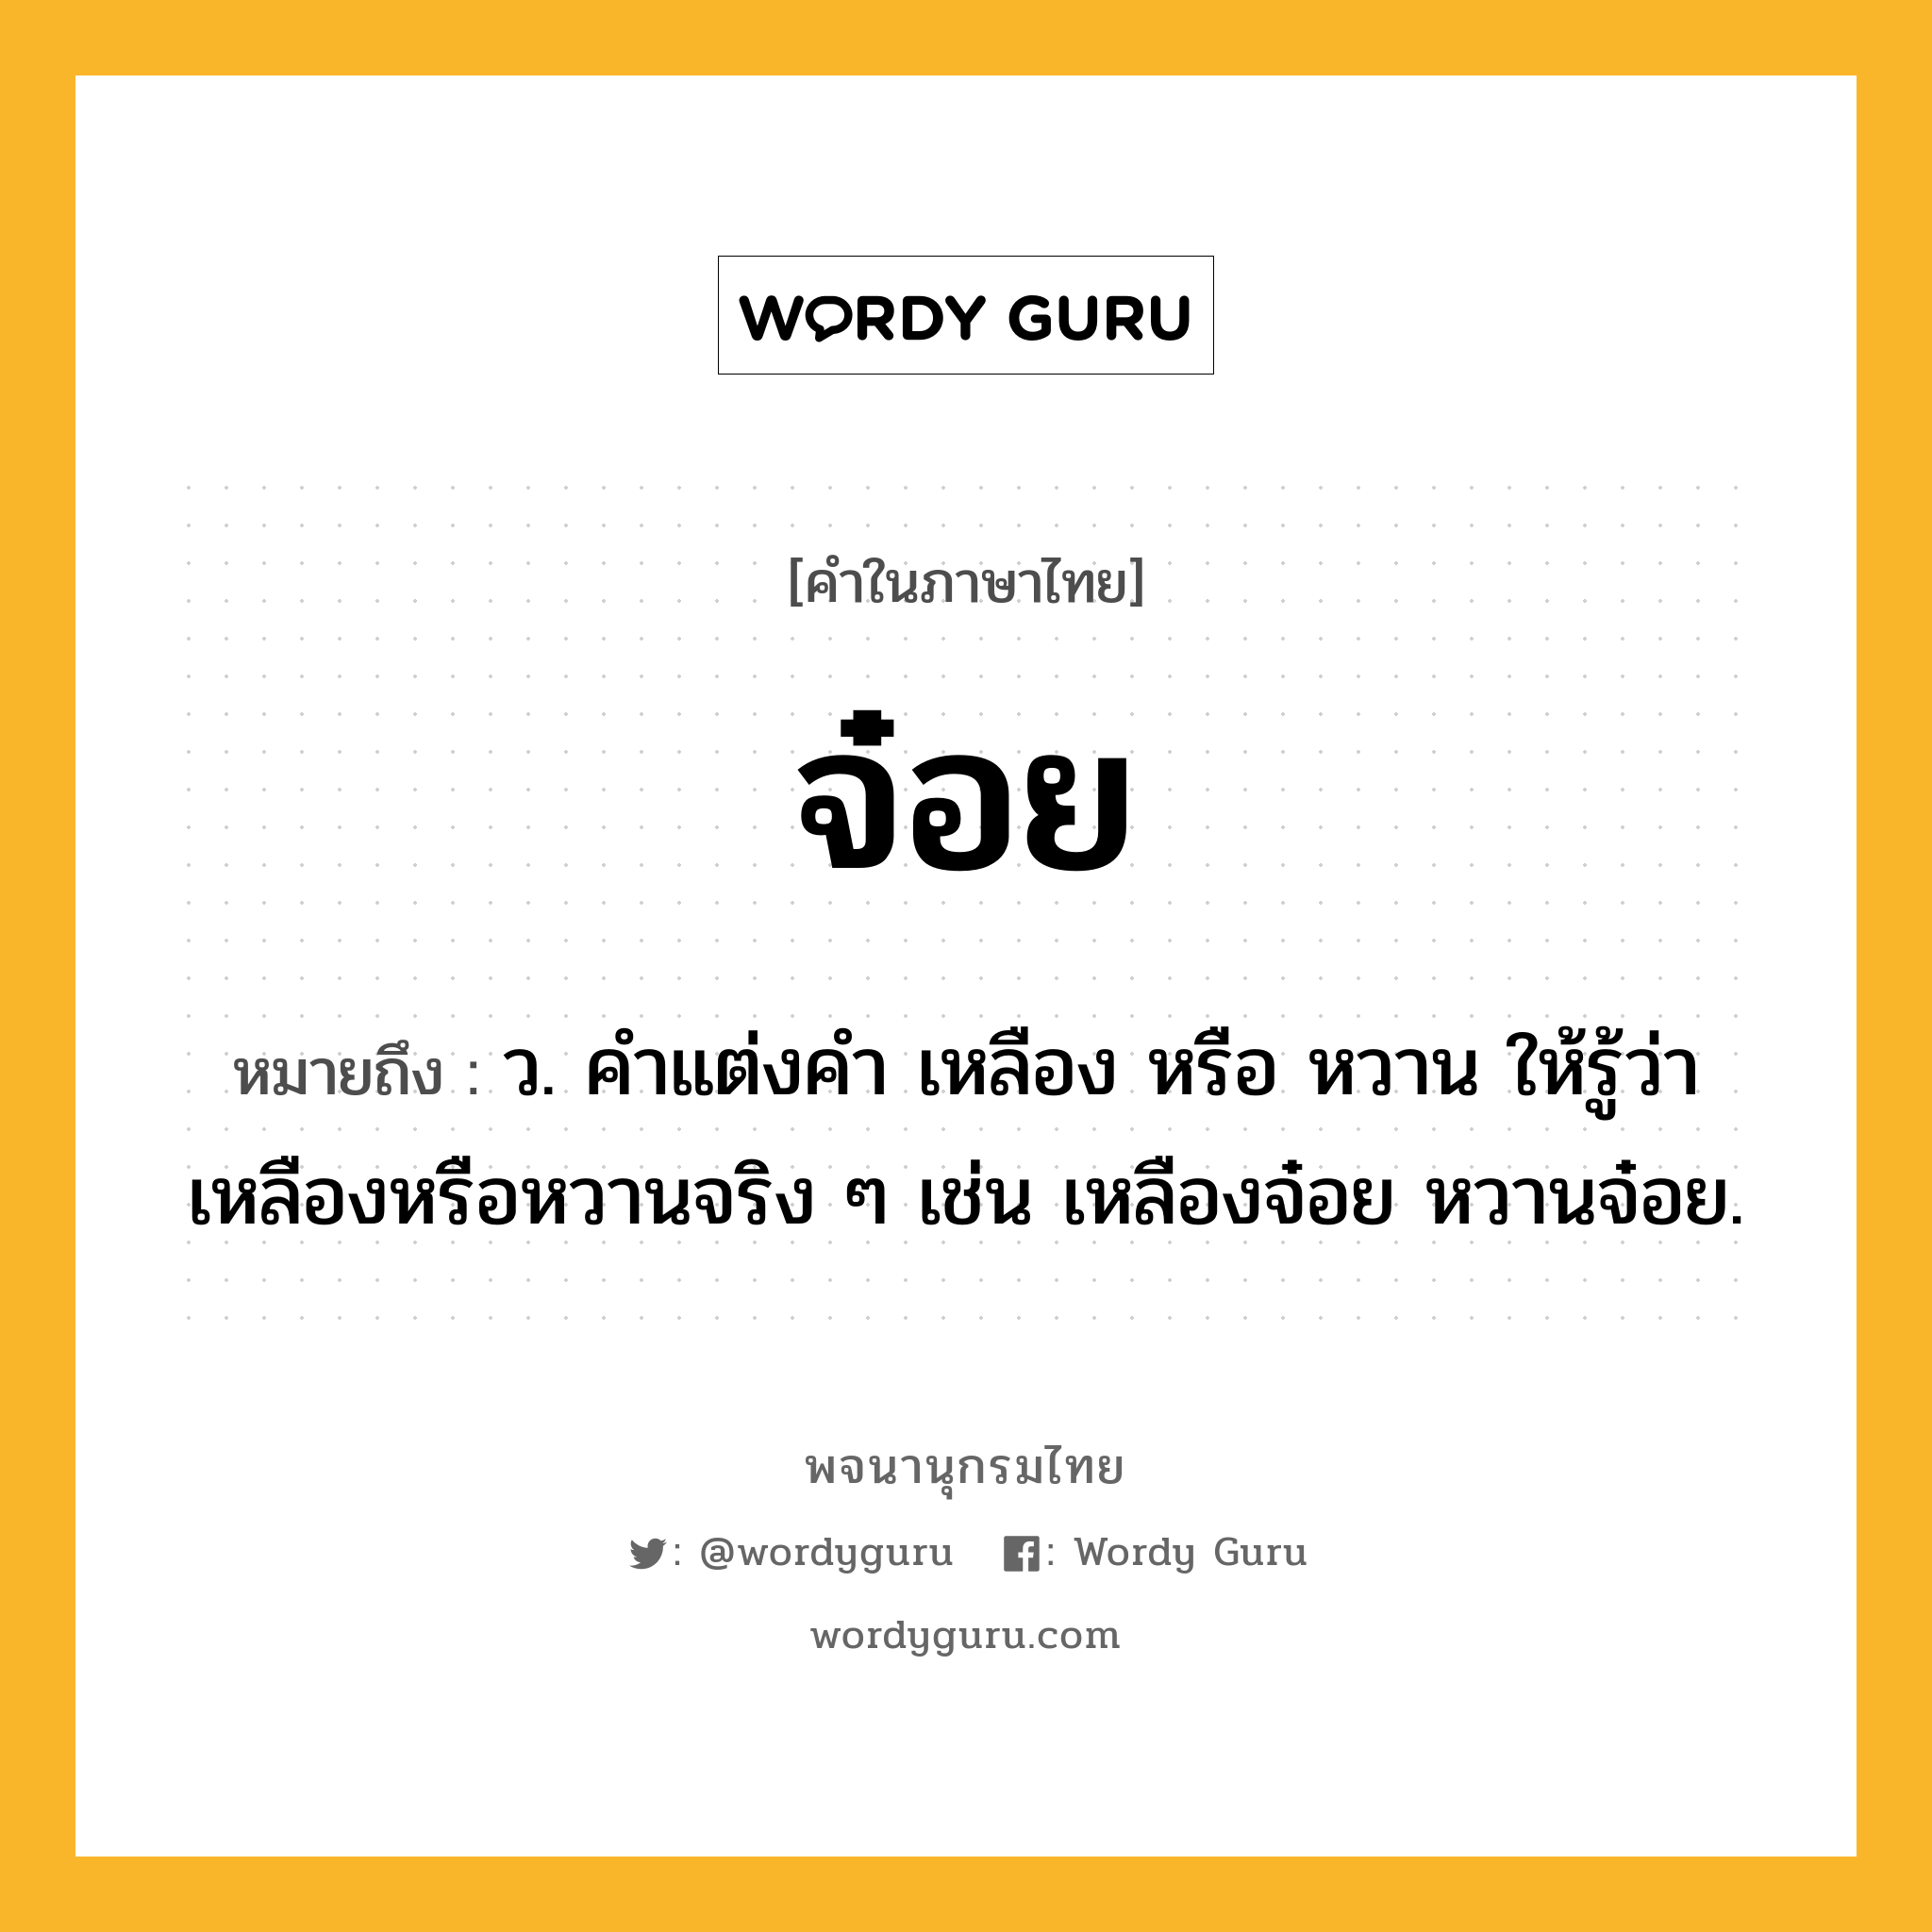 จ๋อย หมายถึงอะไร?, คำในภาษาไทย จ๋อย หมายถึง ว. คําแต่งคํา เหลือง หรือ หวาน ให้รู้ว่าเหลืองหรือหวานจริง ๆ เช่น เหลืองจ๋อย หวานจ๋อย.